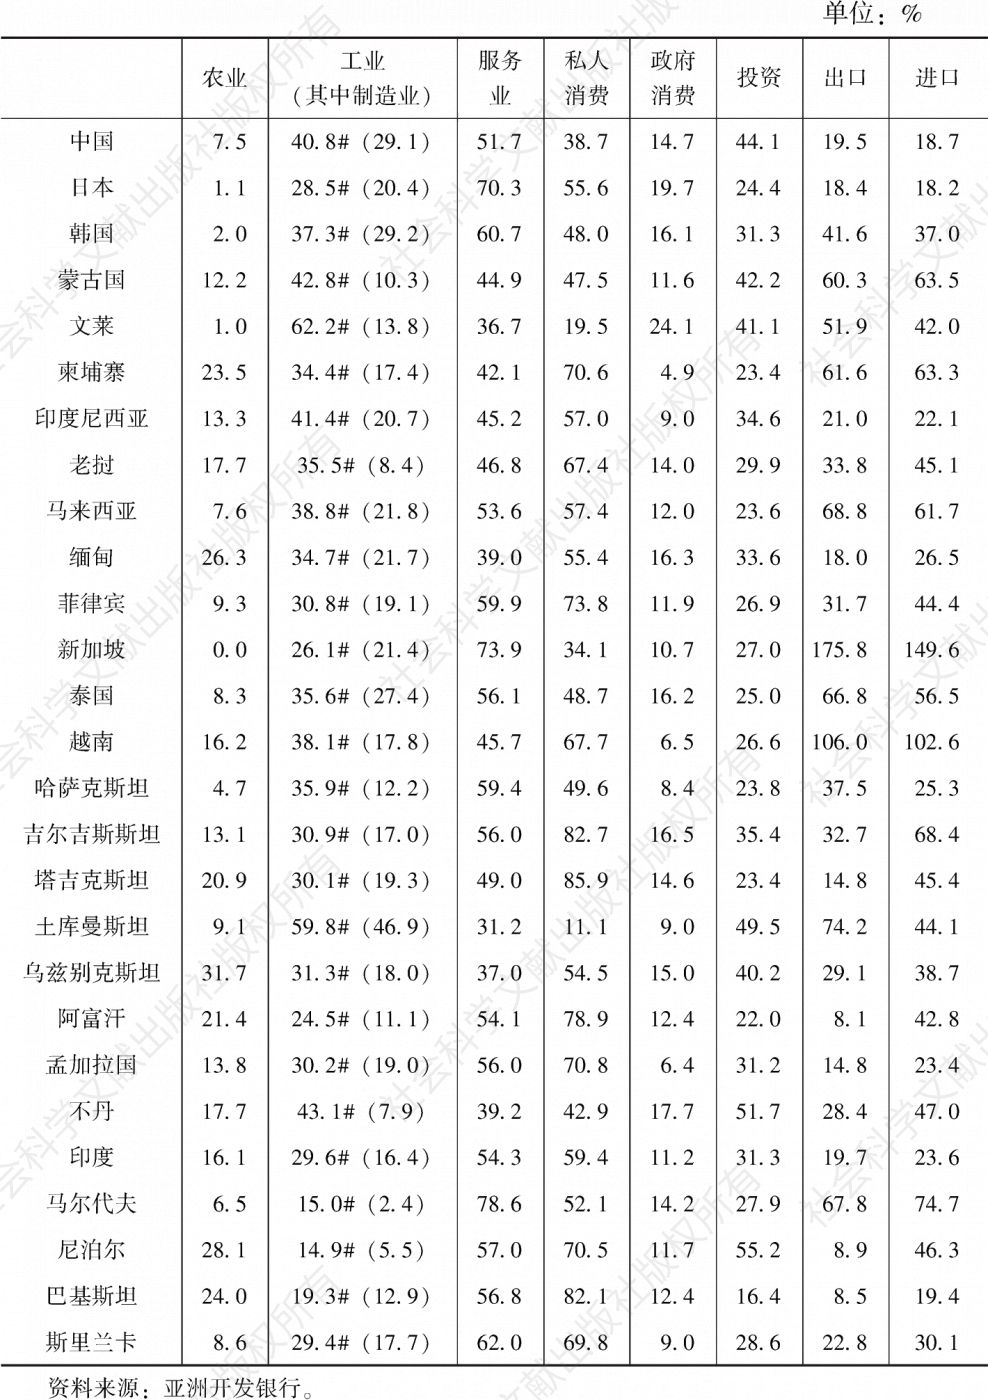 附表4 2019年中国及周边国家的经济结构